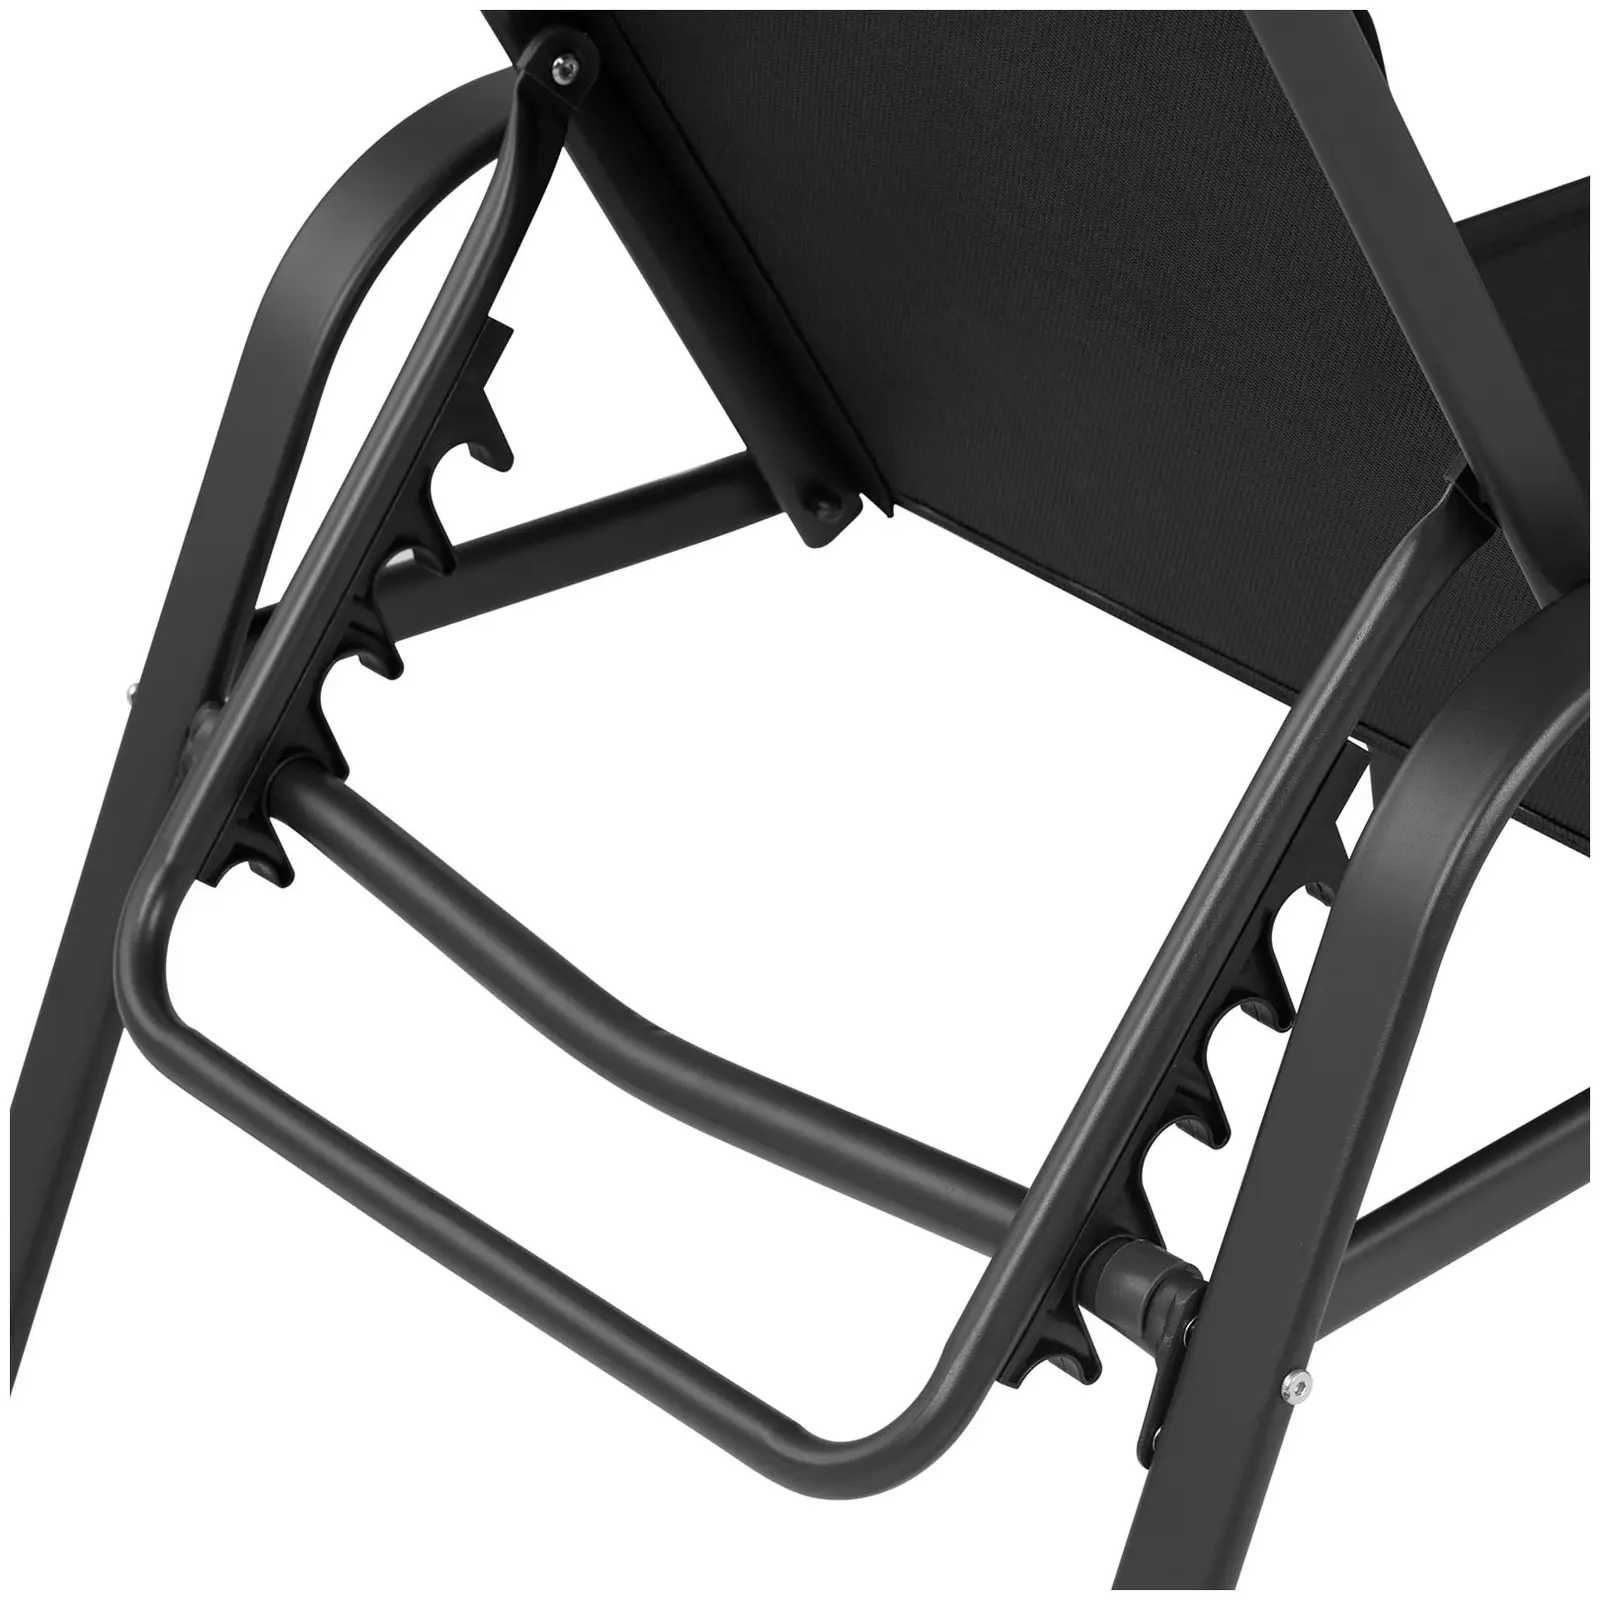 Sunbed - black - steel frame - adjustable backrest